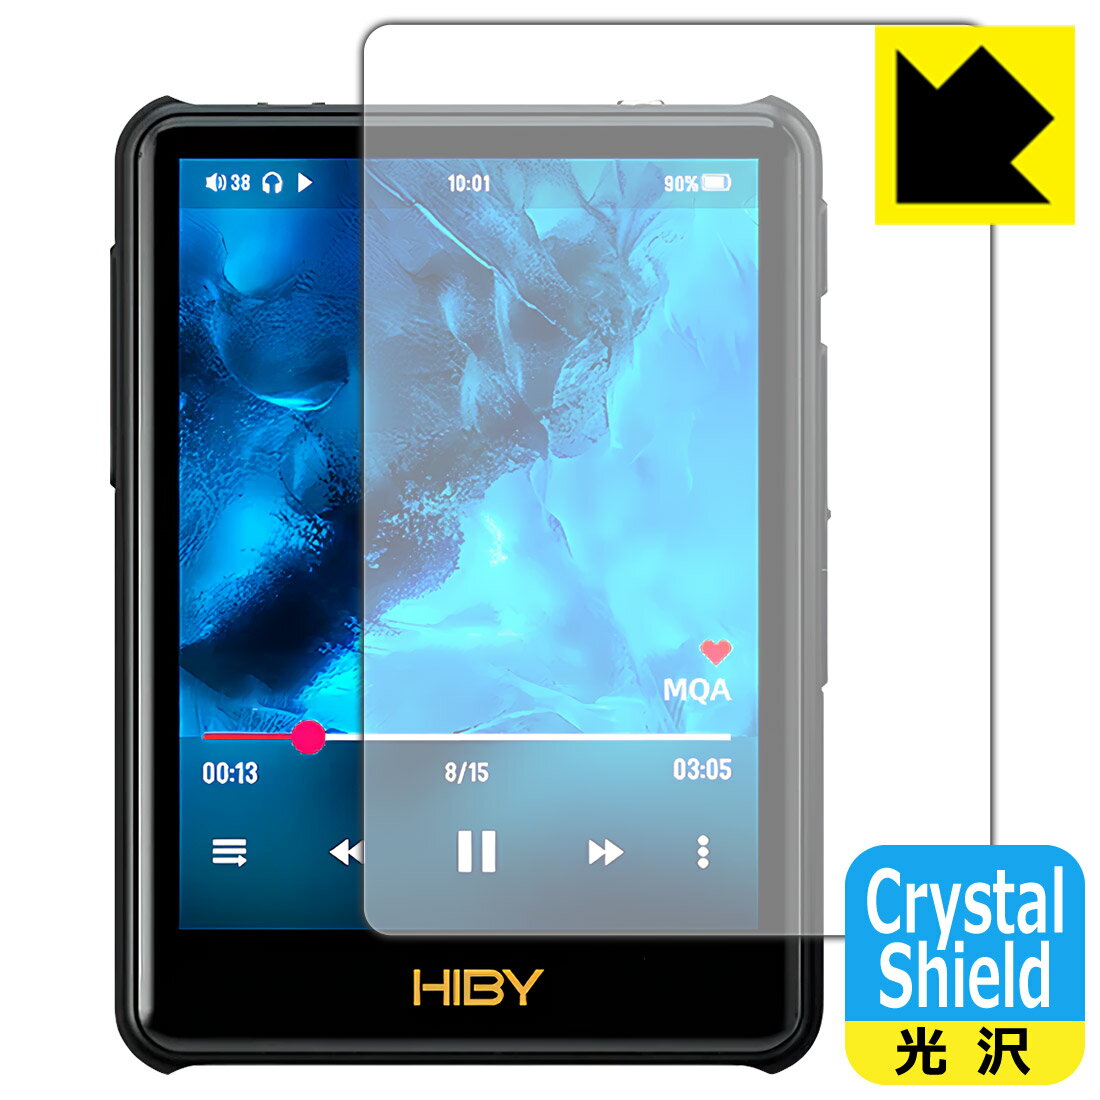 ●対応機種 : HiBy Music New R3 Pro Saber (2022)専用の商品です。●製品内容 : 表面用フィルム1枚・クリーニングワイプ1個●※この機器は周辺部が曲面となったラウンド仕様のため、保護フィルムを端まで貼ることができません。(表示部分はカバーしています)●「Crystal Shield」は高い透明度と光沢感で、保護フィルムを貼っていないかのようなクリア感のある『光沢タイプの保護フィルム』●安心の国産素材を使用。日本国内の自社工場で製造し出荷しています。 ★貼り付け失敗交換サービス対象商品★【ポスト投函送料無料】商品は【ポスト投函発送 (追跡可能メール便)】で発送します。お急ぎ、配達日時を指定されたい方は以下のクーポンを同時購入ください。【お急ぎ便クーポン】　プラス110円(税込)で速達扱いでの発送。お届けはポストへの投函となります。【配達日時指定クーポン】　プラス550円(税込)で配達日時を指定し、宅配便で発送させていただきます。【お急ぎ便クーポン】はこちらをクリック【配達日時指定クーポン】はこちらをクリック 　 貼っていることを意識させないほどの高い透明度に、高級感あふれる光沢・クリアな仕上げとなります。 動画視聴や画像編集など、機器本来の発色を重視したい方におすすめです。 ハードコート加工がされており、キズや擦れに強くなっています。簡単にキズがつかず長くご利用いただけます。 表面はフッ素コーティングがされており、皮脂や汚れがつきにくく、また、落ちやすくなっています。 指滑りもなめらかで、快適な使用感です。 油性マジックのインクもはじきますので簡単に拭き取れます。 接着面は気泡の入りにくい特殊な自己吸着タイプです。素材に柔軟性があり、貼り付け作業も簡単にできます。また、はがすときにガラス製フィルムのように割れてしまうことはありません。 貼り直しが何度でもできるので、正しい位置へ貼り付けられるまでやり直すことができます。 抗菌加工によりフィルム表面の菌の繁殖を抑えることができます。清潔な画面を保ちたい方におすすめです。 ※抗菌率99.9％ / JIS Z2801 抗菌性試験方法による評価 最高級グレードの国産素材を日本国内の弊社工場で加工している完全な Made in Japan です。安心の品質をお届けします。 使用上の注意 ●本製品は機器の画面をキズなどから保護するフィルムです。他の目的にはご使用にならないでください。 ●本製品は液晶保護および機器本体を完全に保護することを保証するものではありません。機器の破損、損傷、故障、その他損害につきましては一切の責任を負いかねます。 ●製品の性質上、画面操作の反応が変化したり、表示等が変化して見える場合がございます。 ●貼り付け作業時の失敗(位置ズレ、汚れ、ゆがみ、折れ、気泡など)および取り外し作業時の破損、損傷などについては、一切の責任を負いかねます。 ●水に濡れた状態でのご使用は吸着力の低下などにより、保護フィルムがはがれてしまう場合がございます。防水対応の機器でご使用の場合はご注意ください。 ●アルコール類やその他薬剤を本製品に付着させないでください。表面のコーティングや吸着面が変質するおそれがあります。 ●品質向上のため、仕様などを予告なく変更する場合がございますので、予めご了承ください。